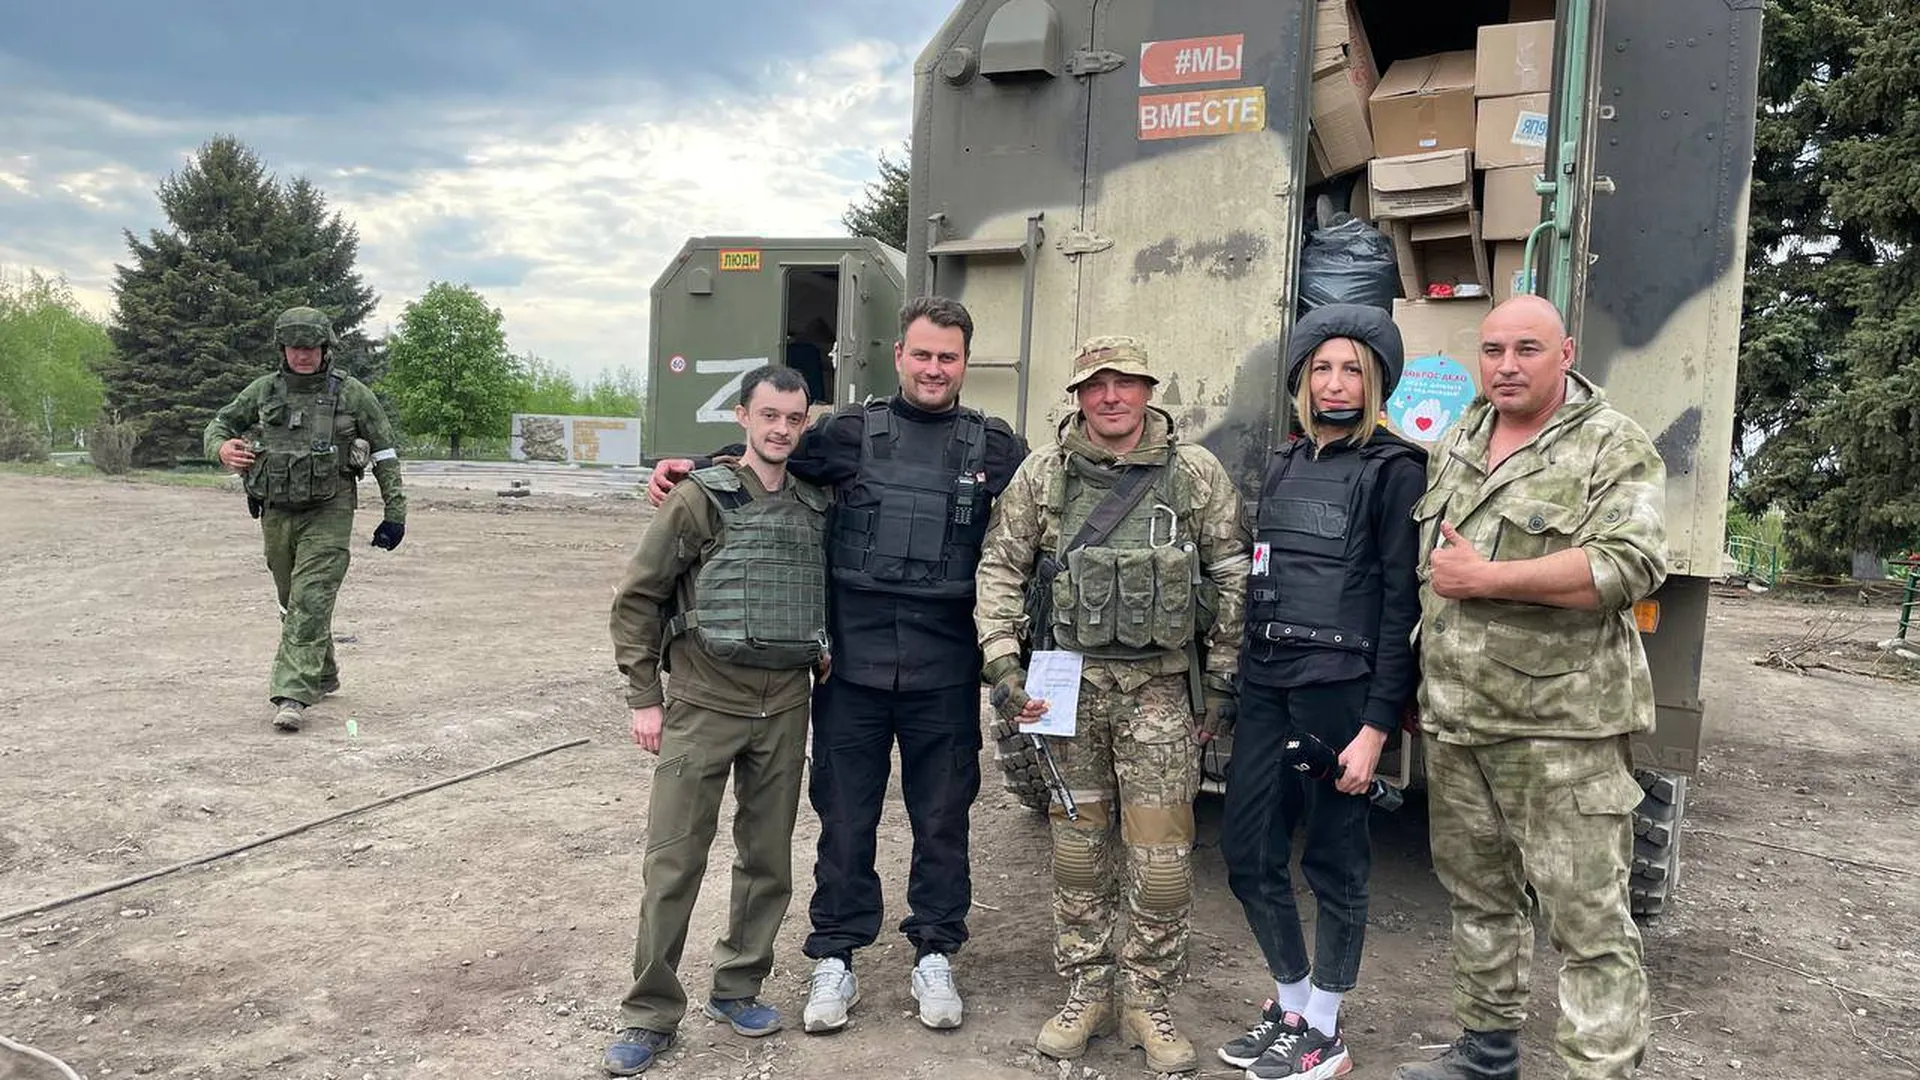 Защитникам тоже важна помощь. Подмосковье поддержало бойцов ДНР на передовой в Запорожье